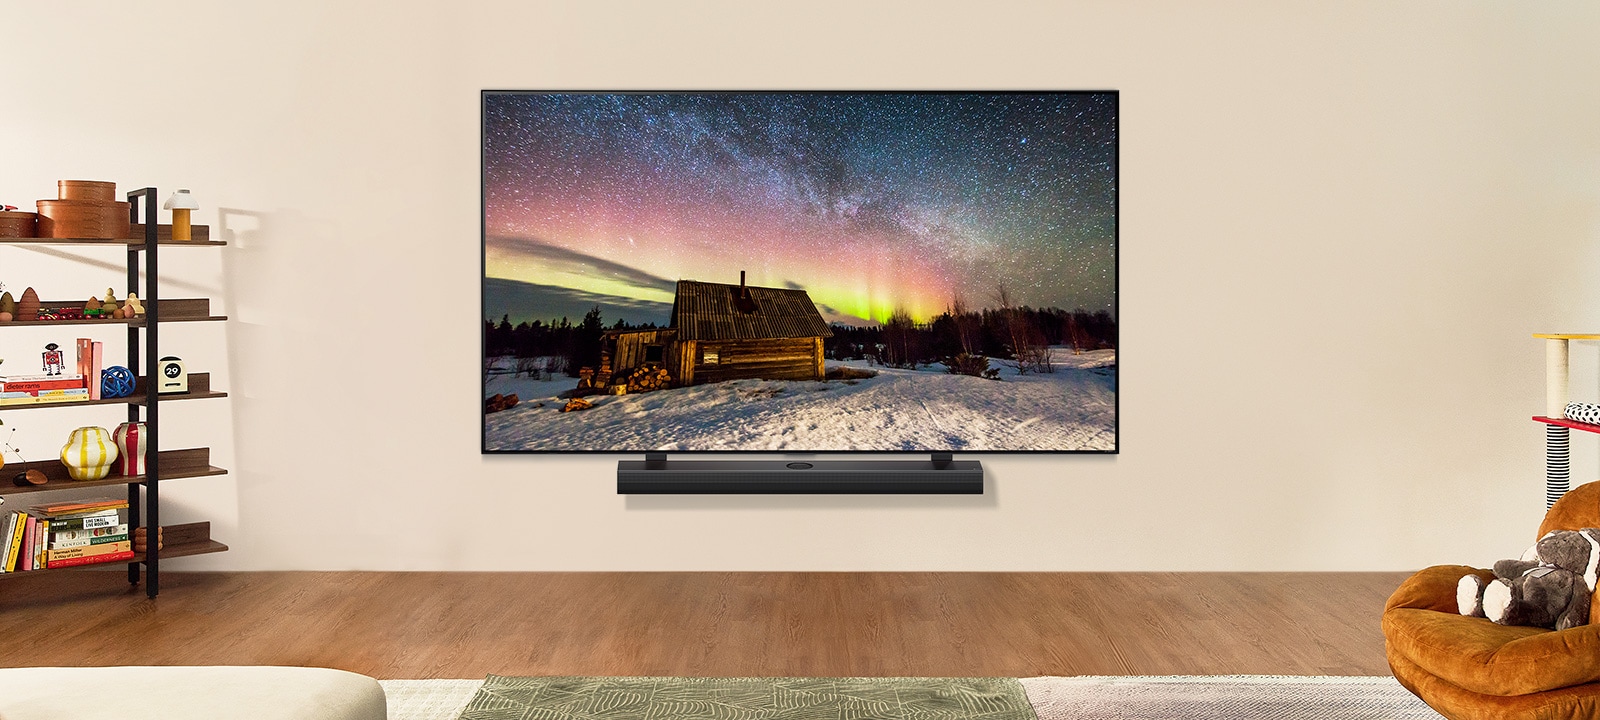 Телевизор LG TV и звуковая панель LG Soundbar в современном жилом пространстве в дневное время. Изображение северного сияния на экране отображается с идеальным уровнем яркости.